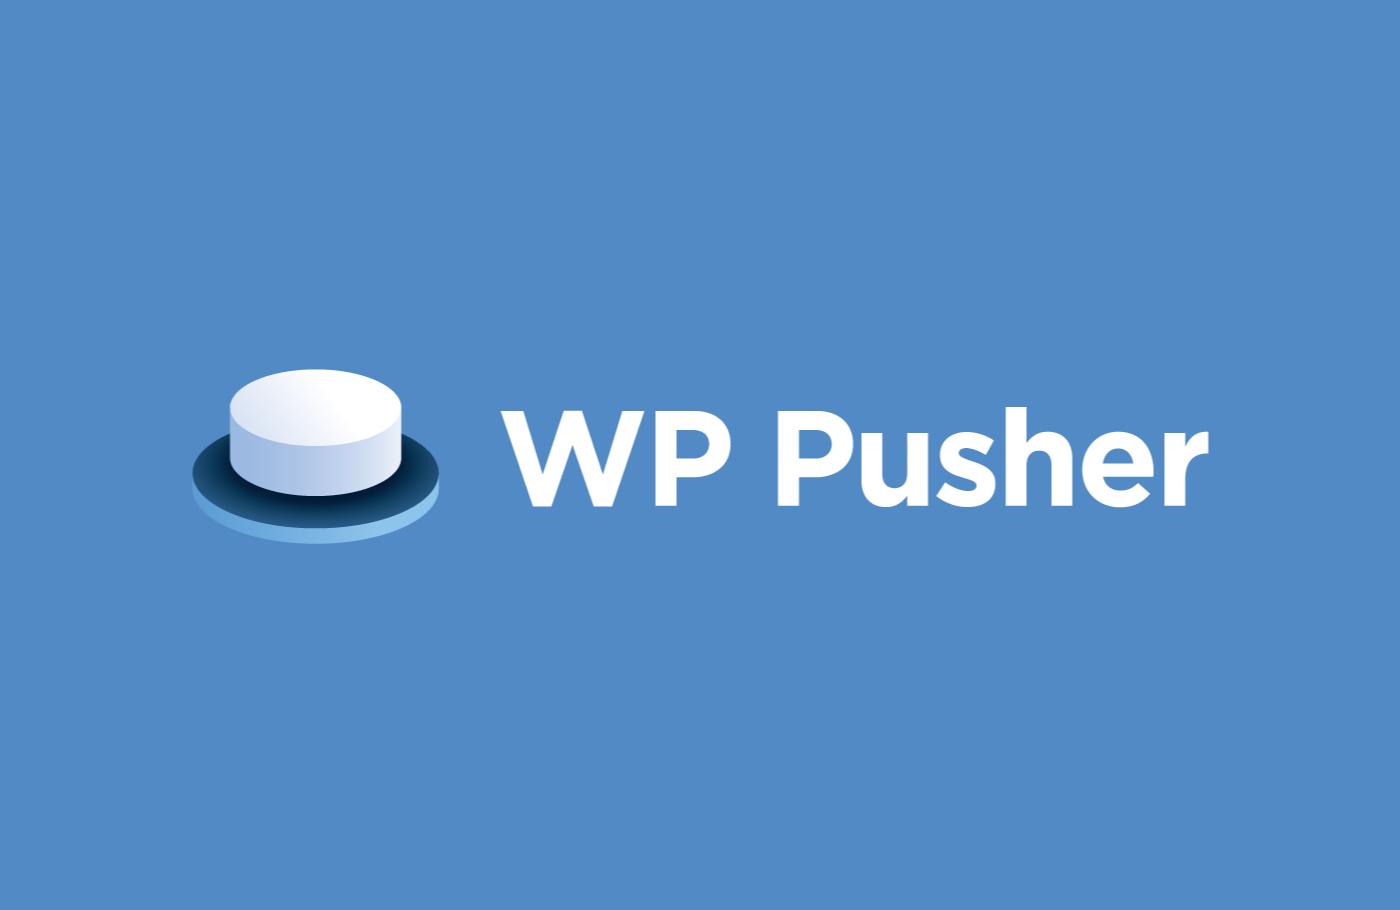 WP Pusher